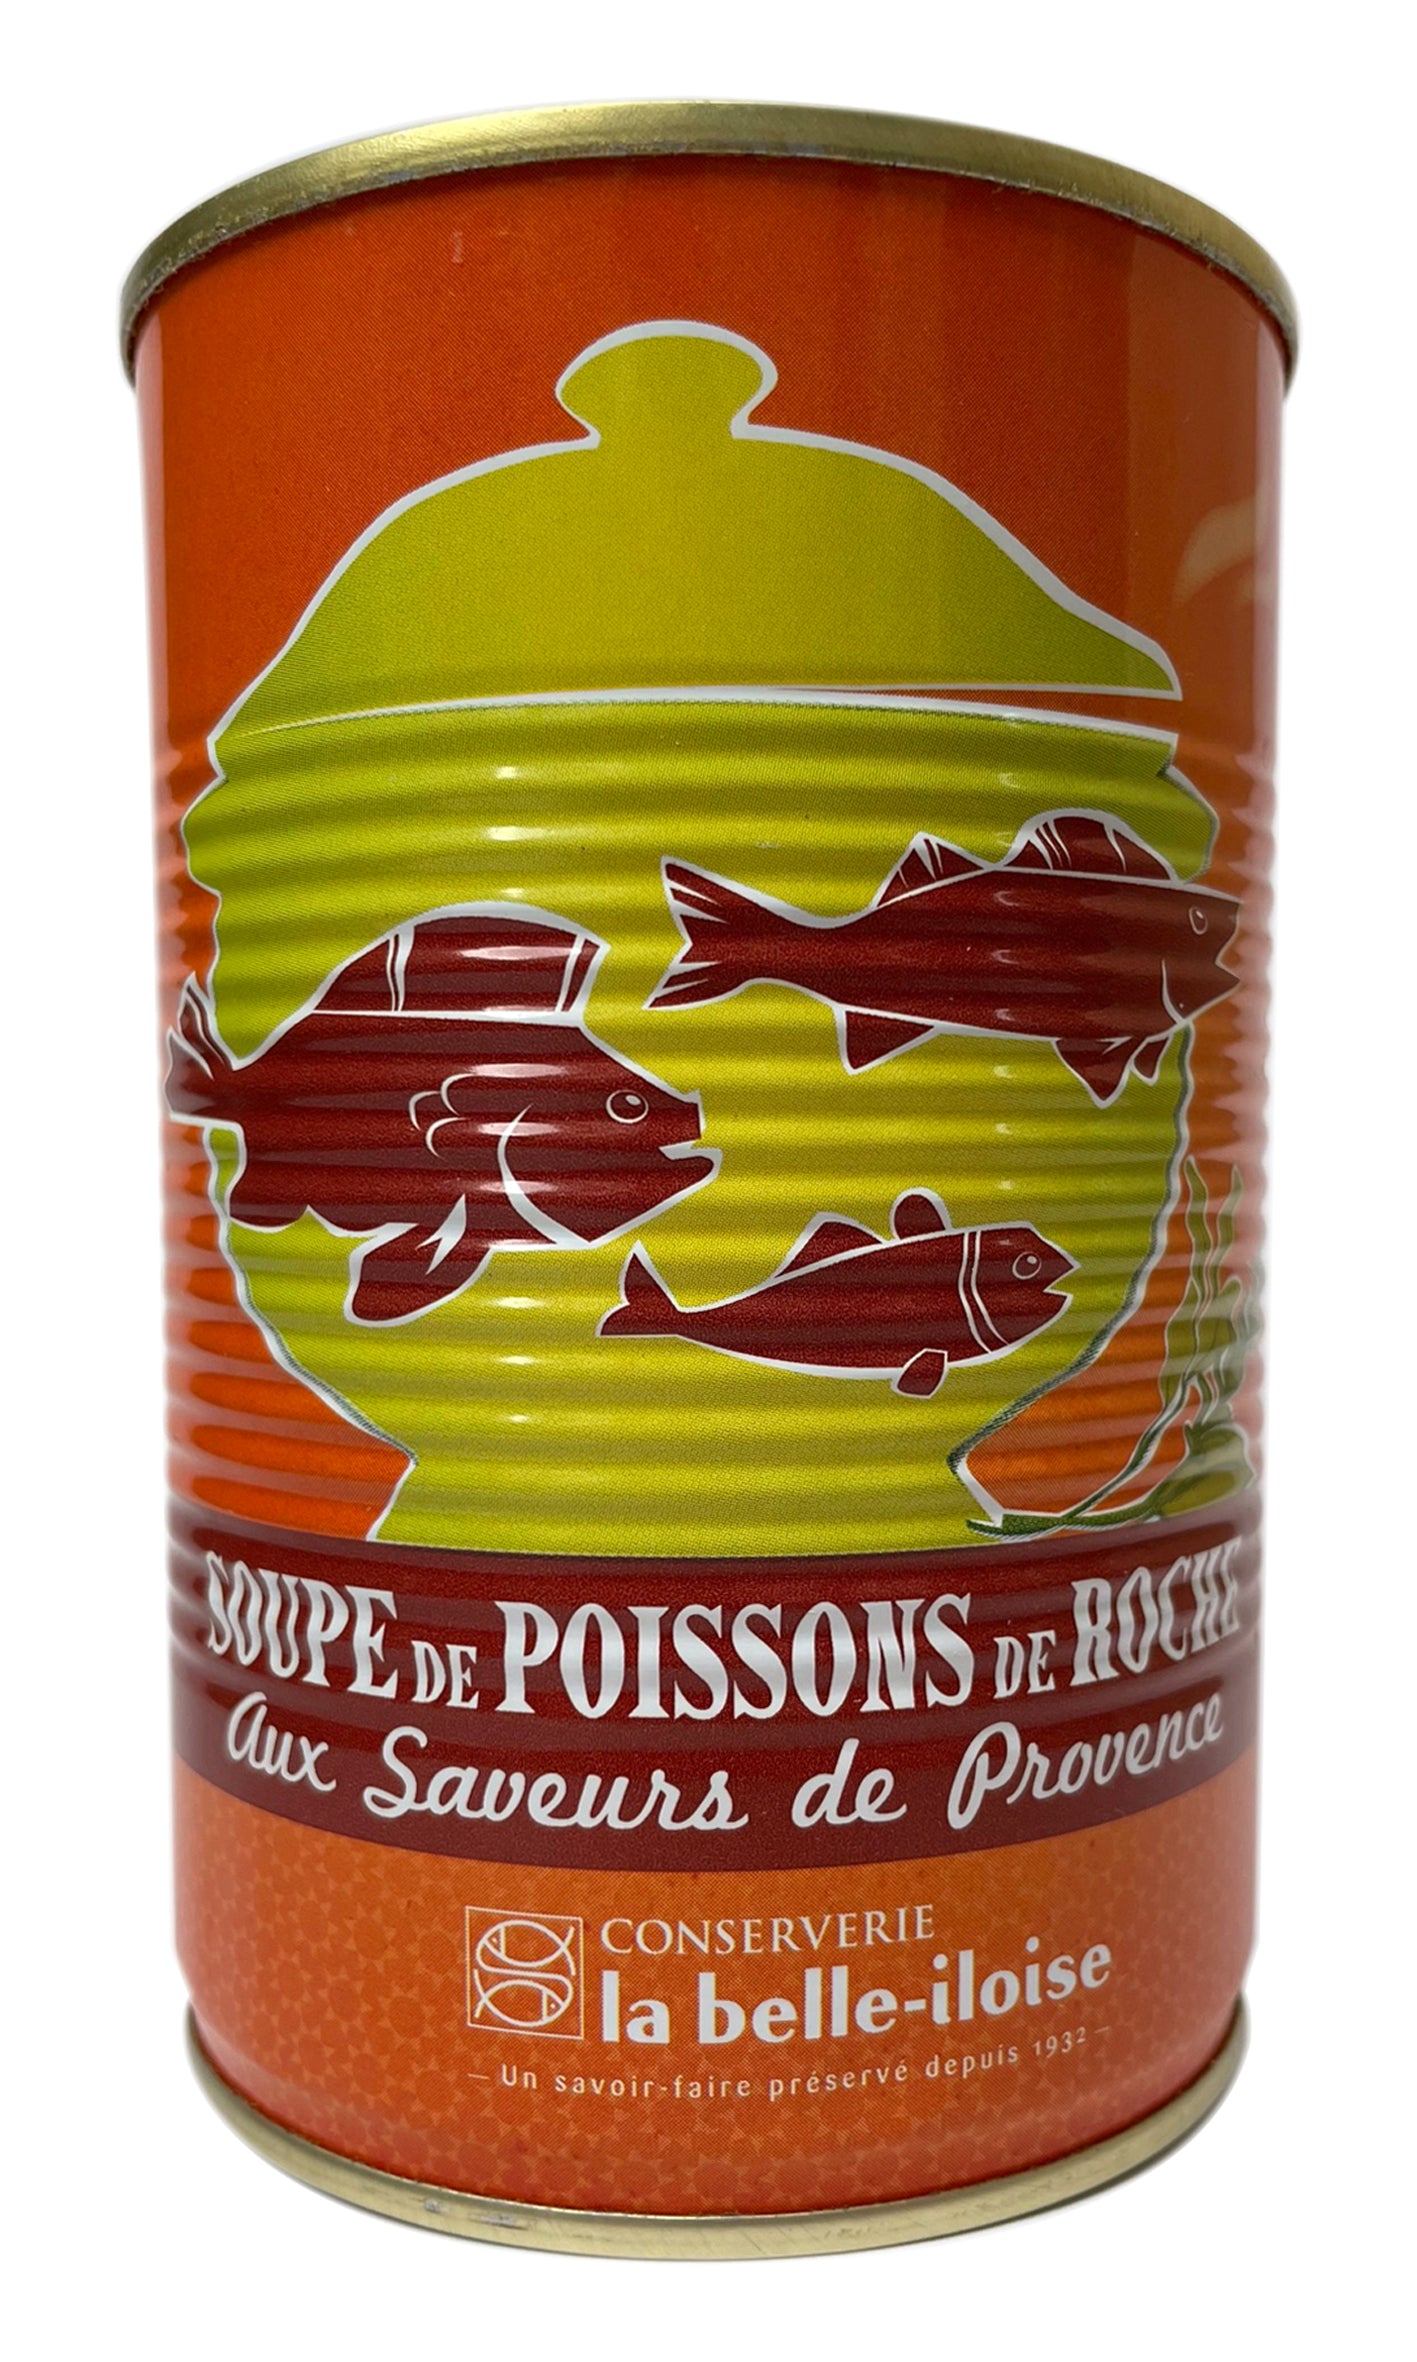 Conserverie la belle-iloise - Soupe de Poissons de Roche (Rock Fish Soup) - 400g